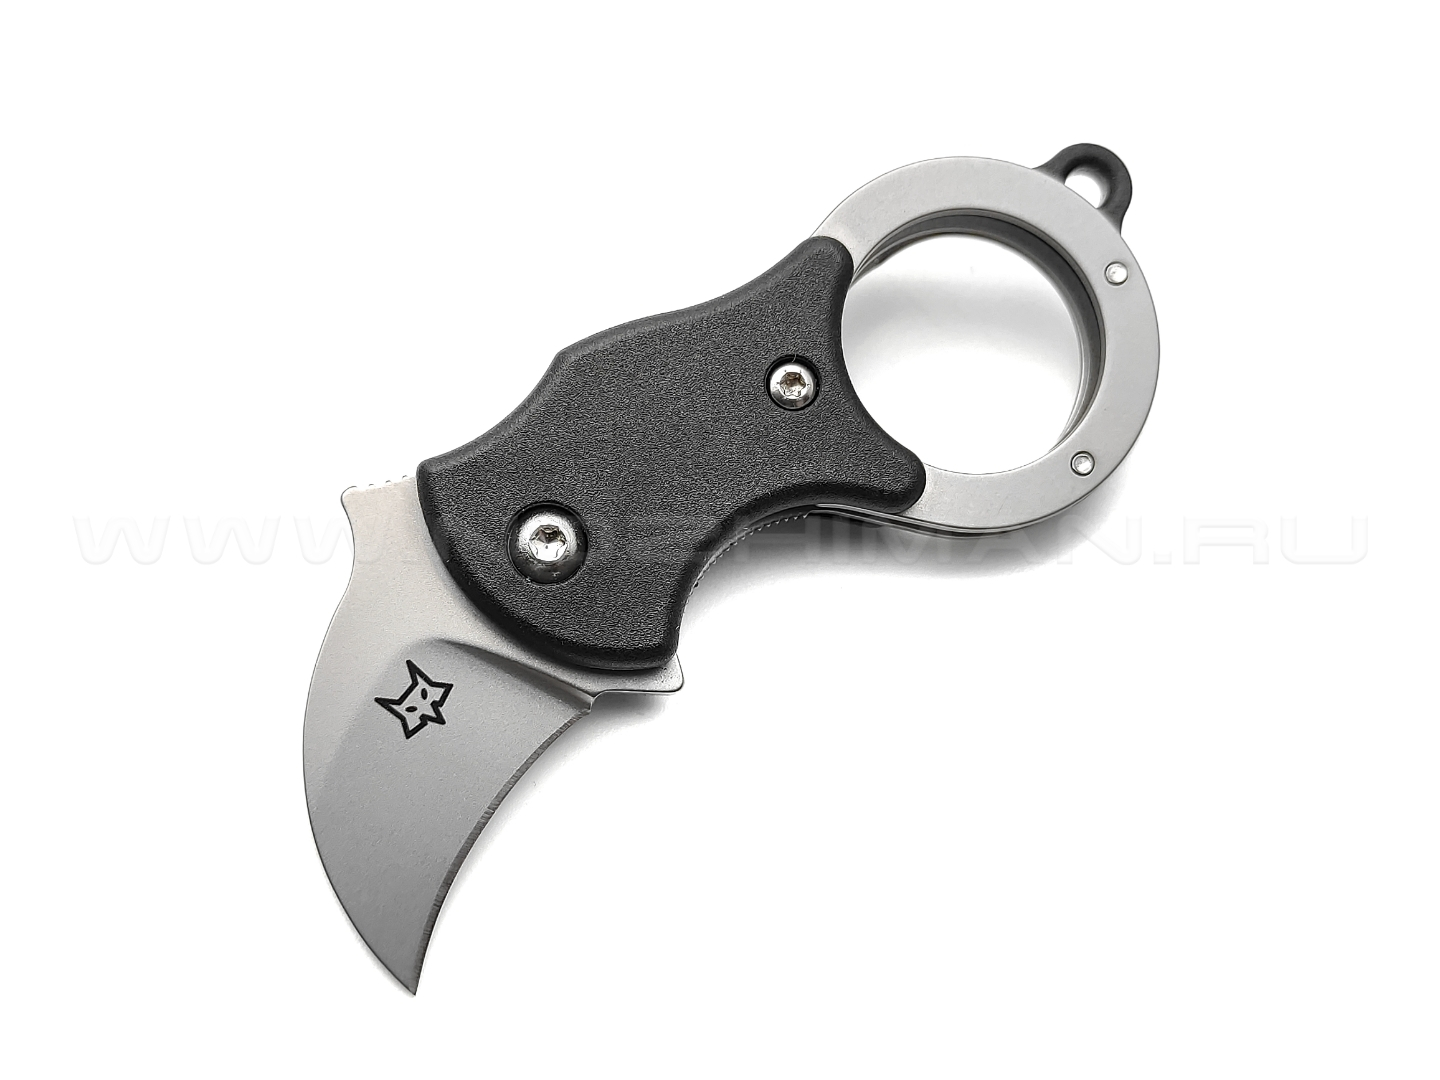 Нож Fox Mini-Ka Black FX-535 сталь 1.4116, рукоять FRN